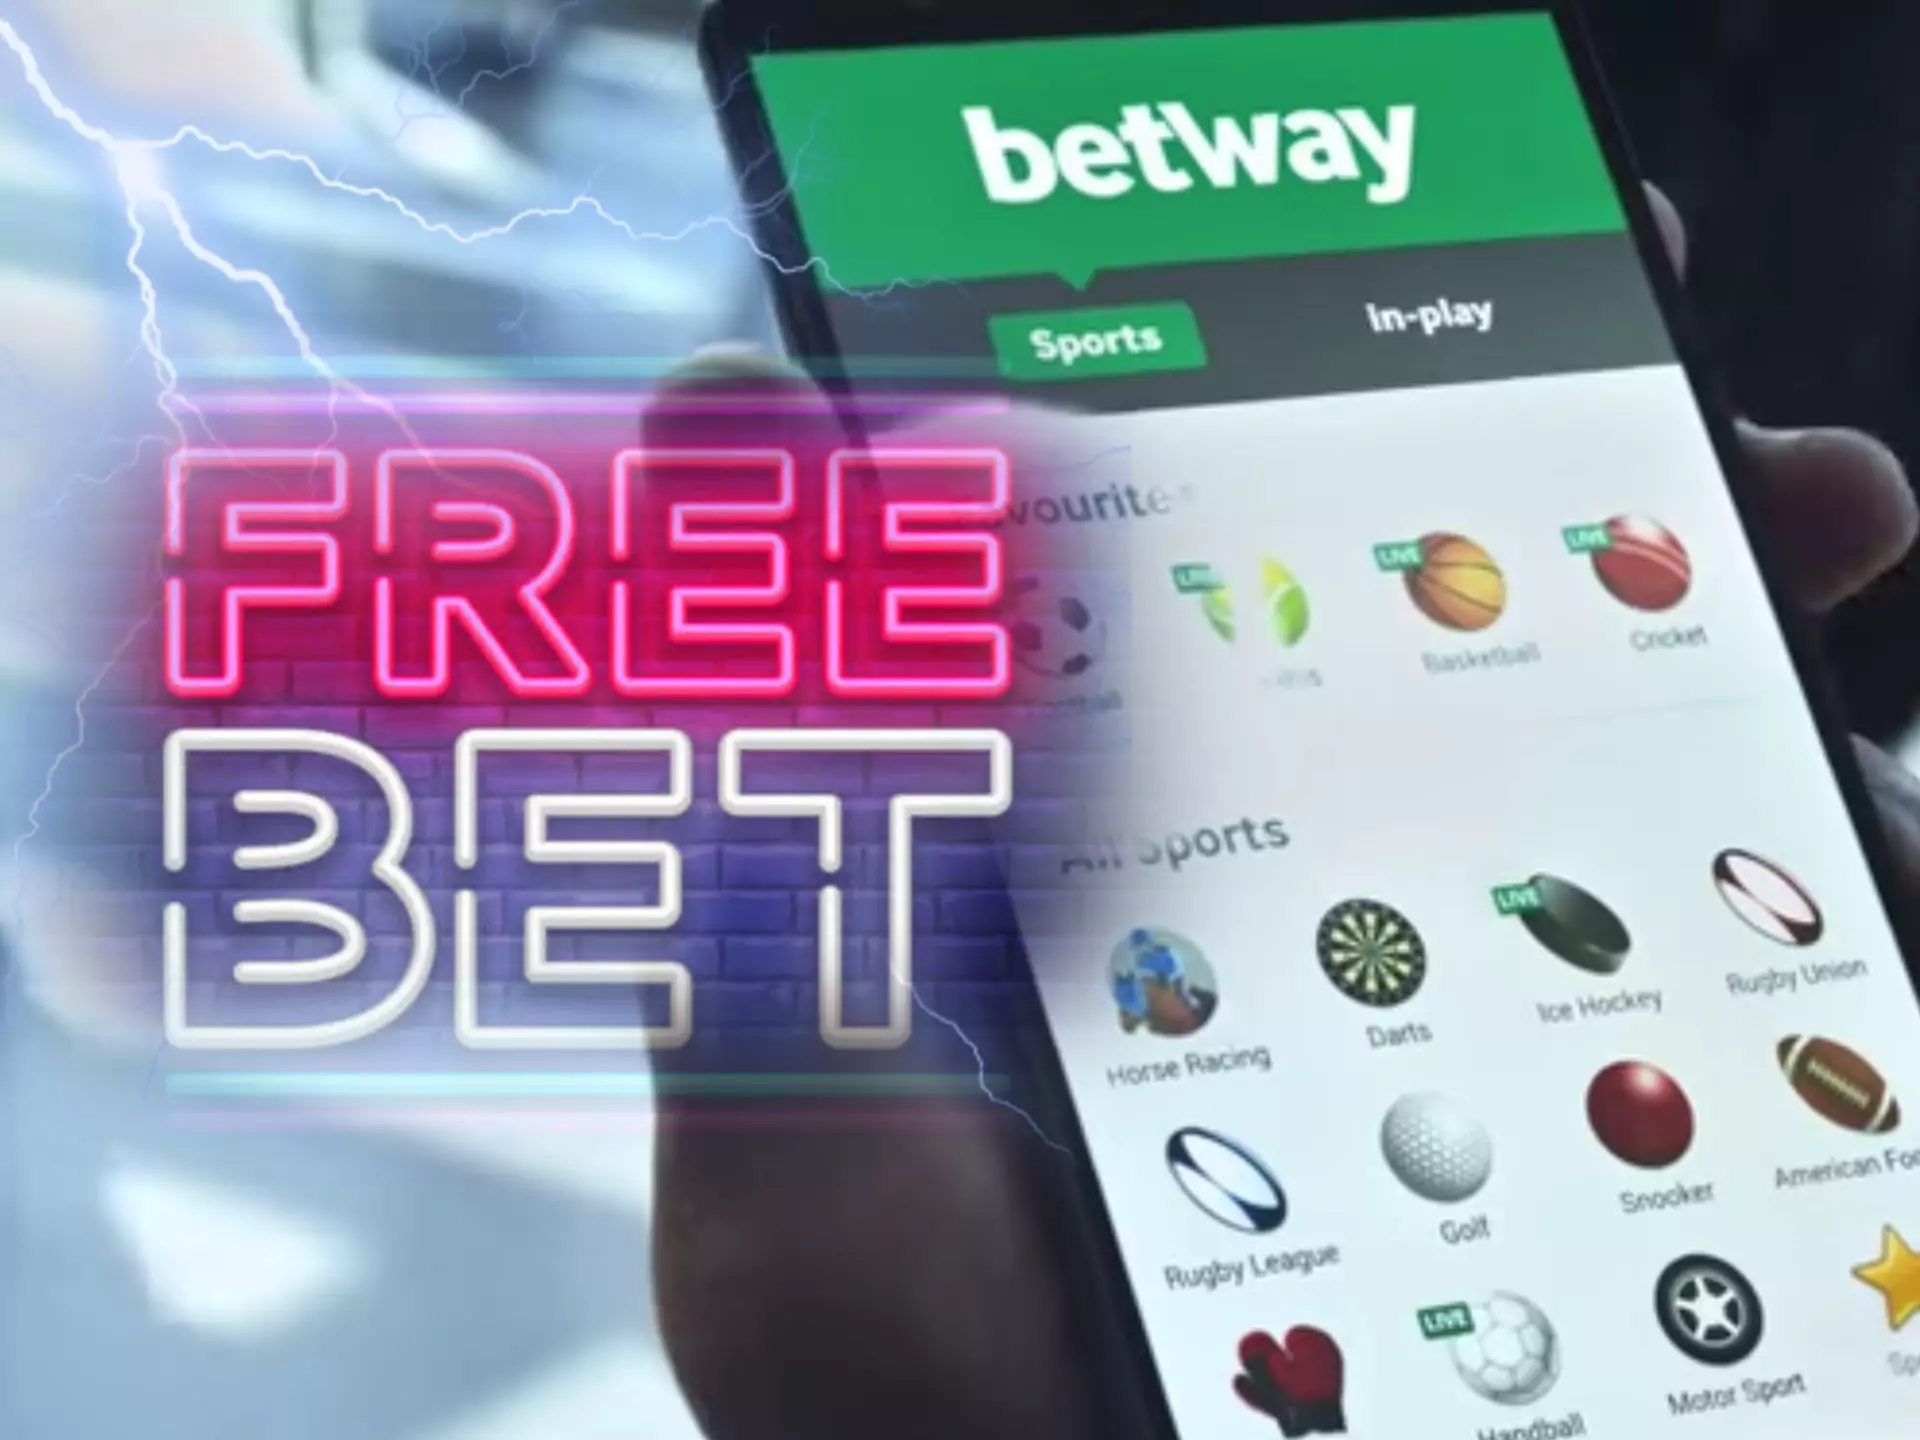 आप Betway ऐप के माध्यम से क्रिकेट सट्टेबाजी पर अपना स्वागत मुक्त दांव खर्च कर सकते हैं।